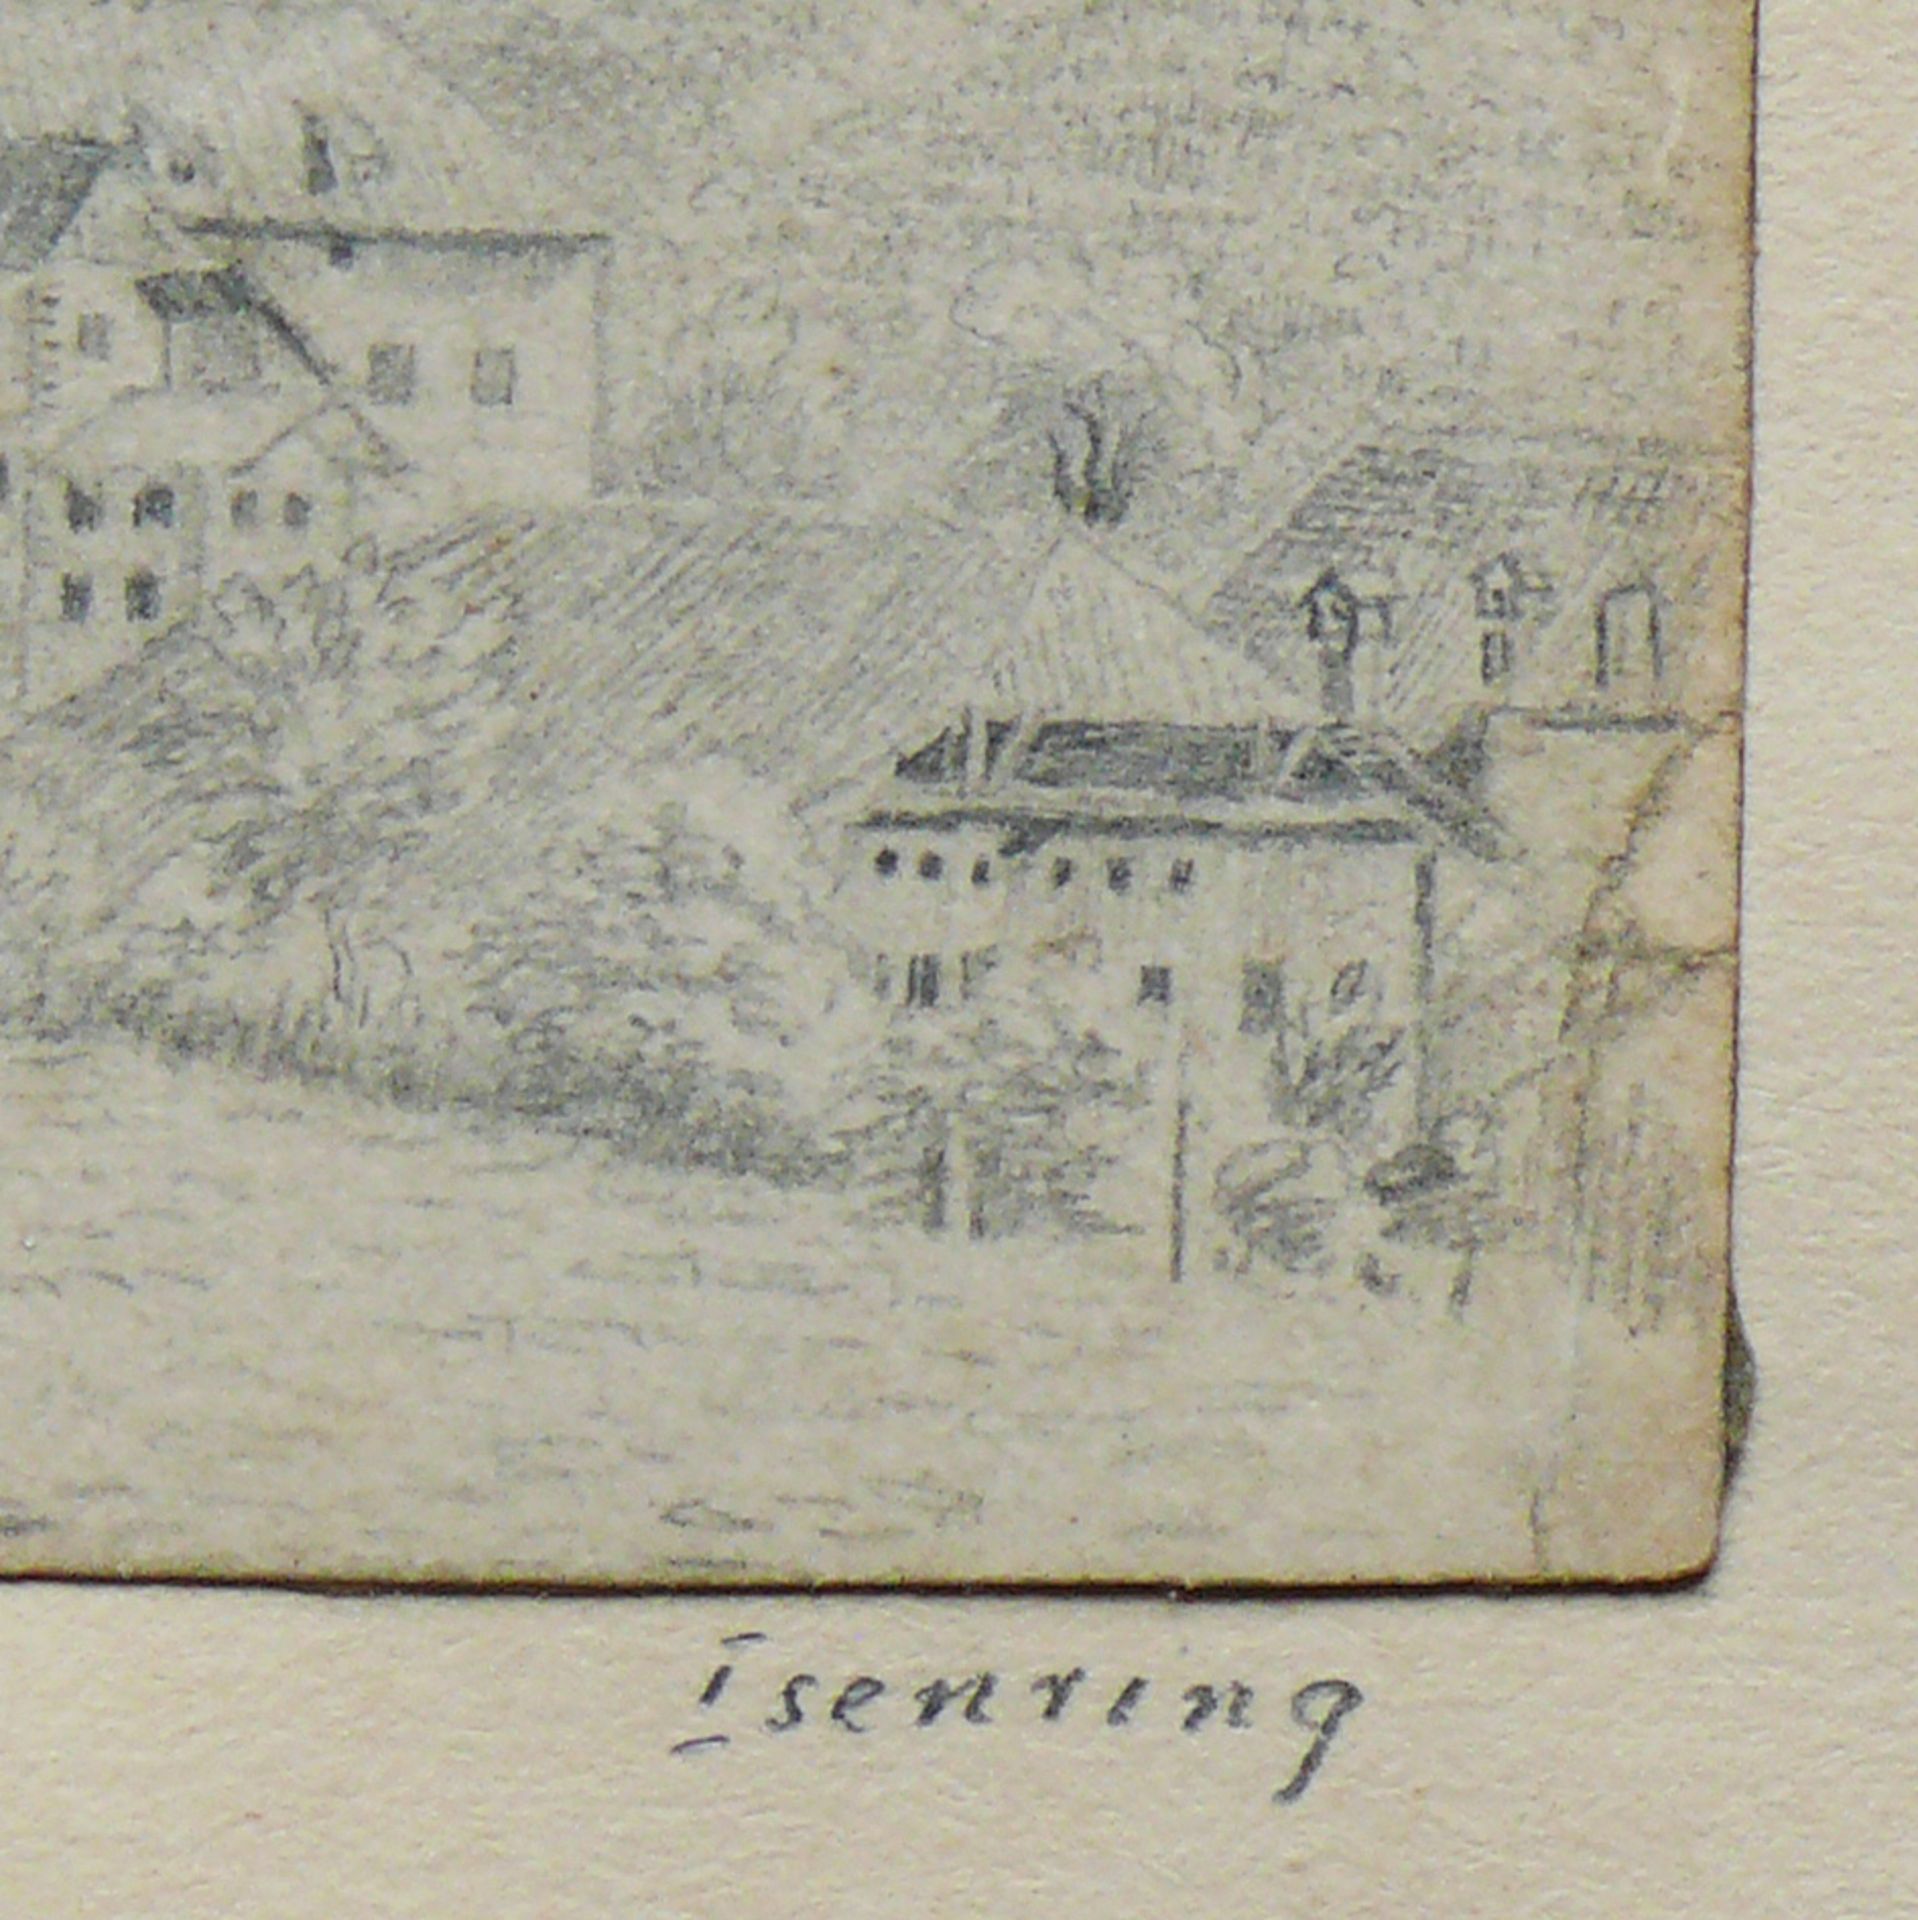 Isenring, Johann Baptist (1796 - 1860) - Image 3 of 4